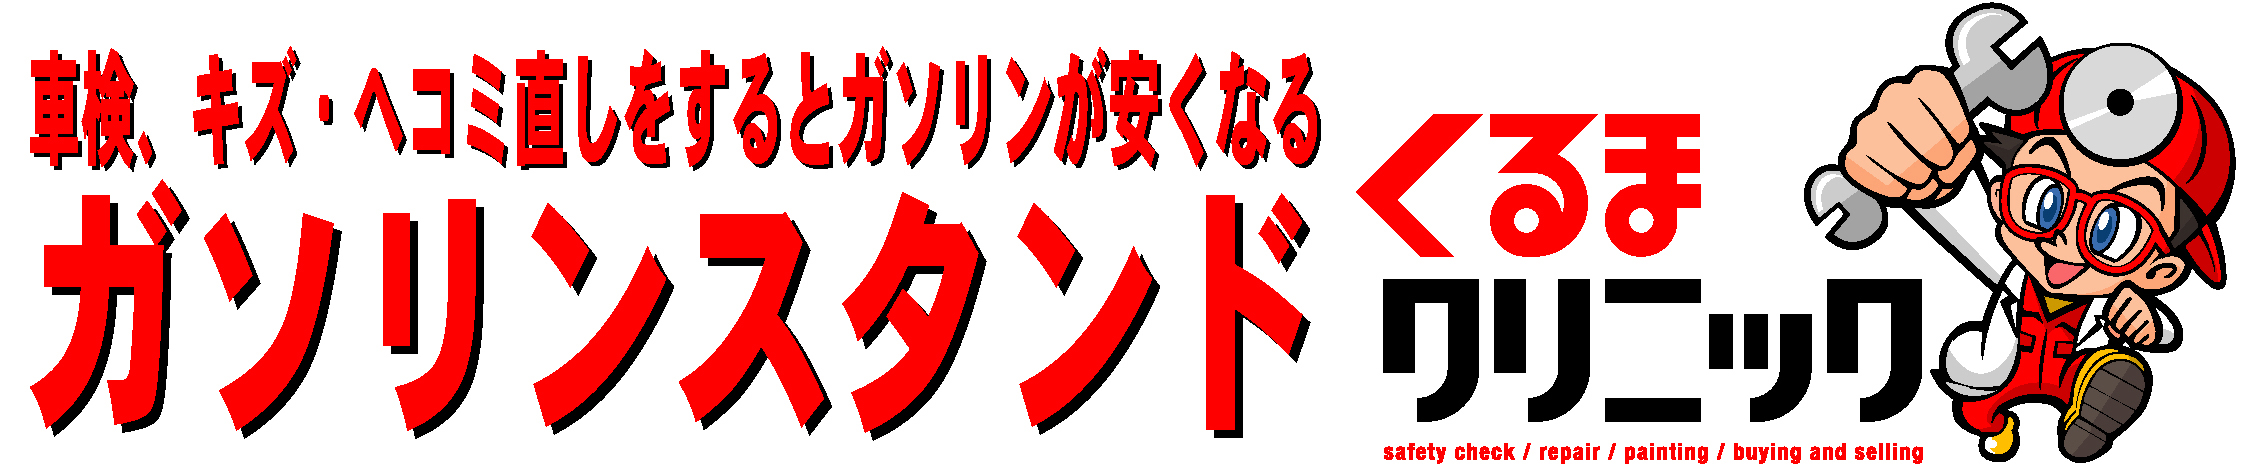 kuruma_clinic_logo.jpg